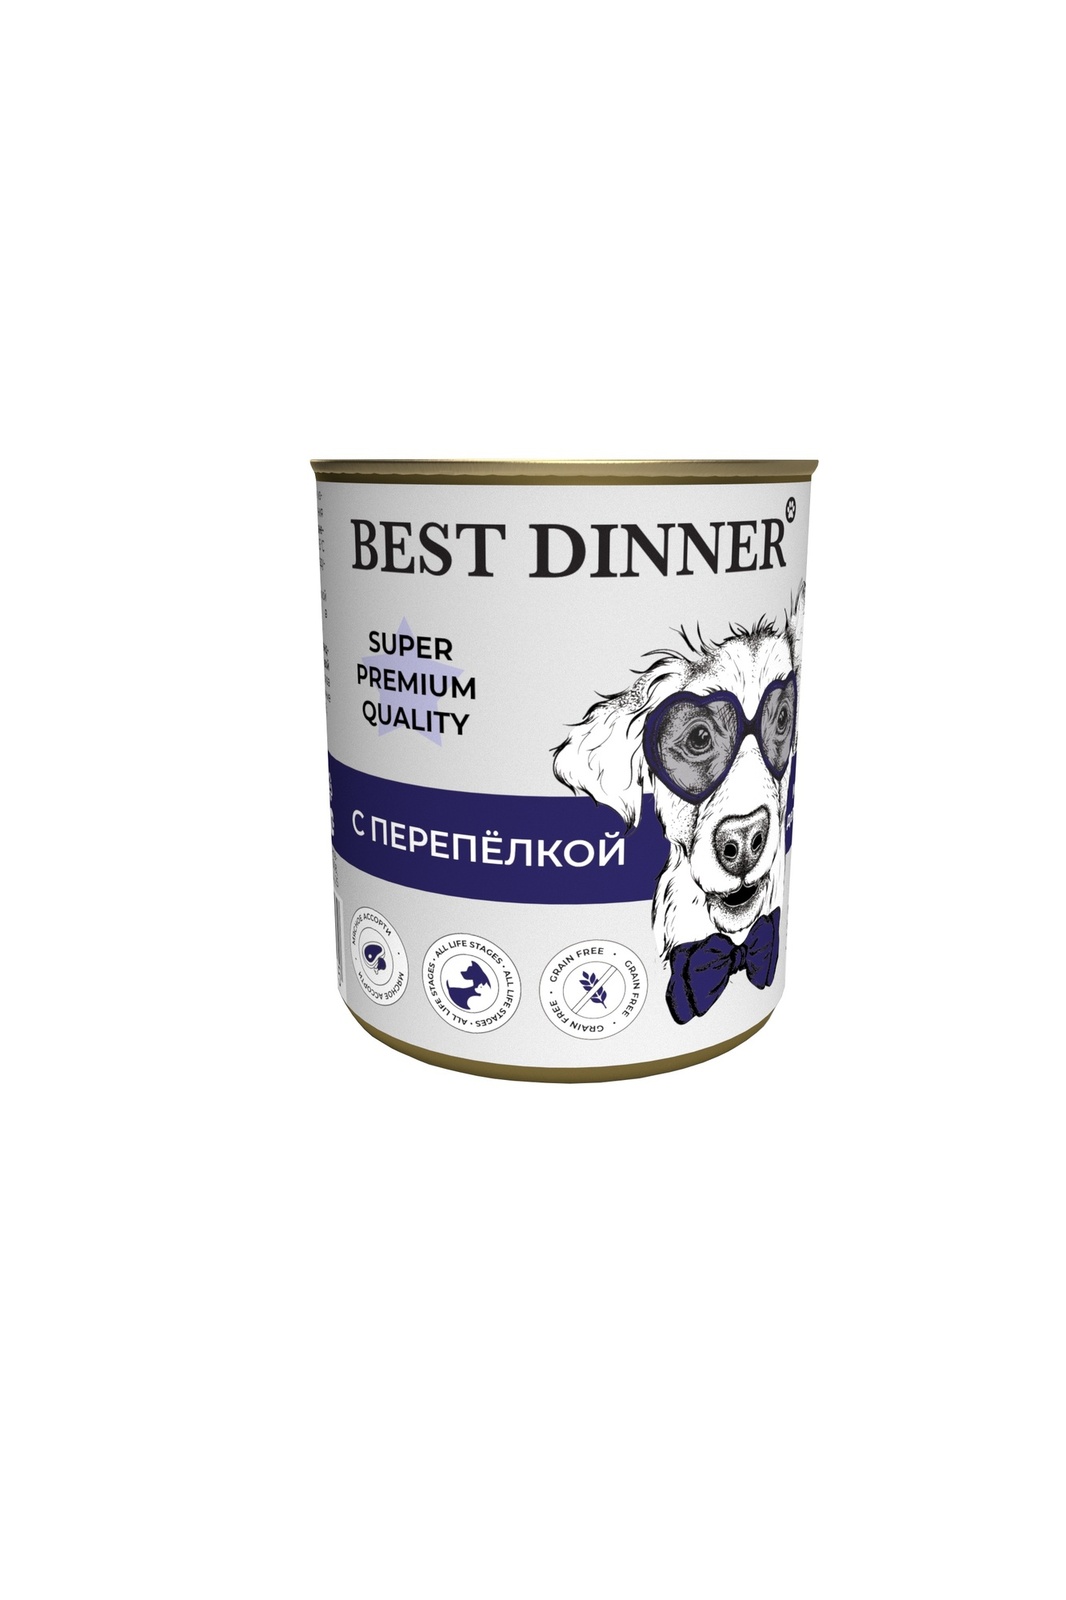 Best Dinner Best Dinner консервы для собак Super Premium С перепелкой (340 г) best dinner best dinner консервы ягненок с сердцем для собак с чувствительным пищеварением 340 г